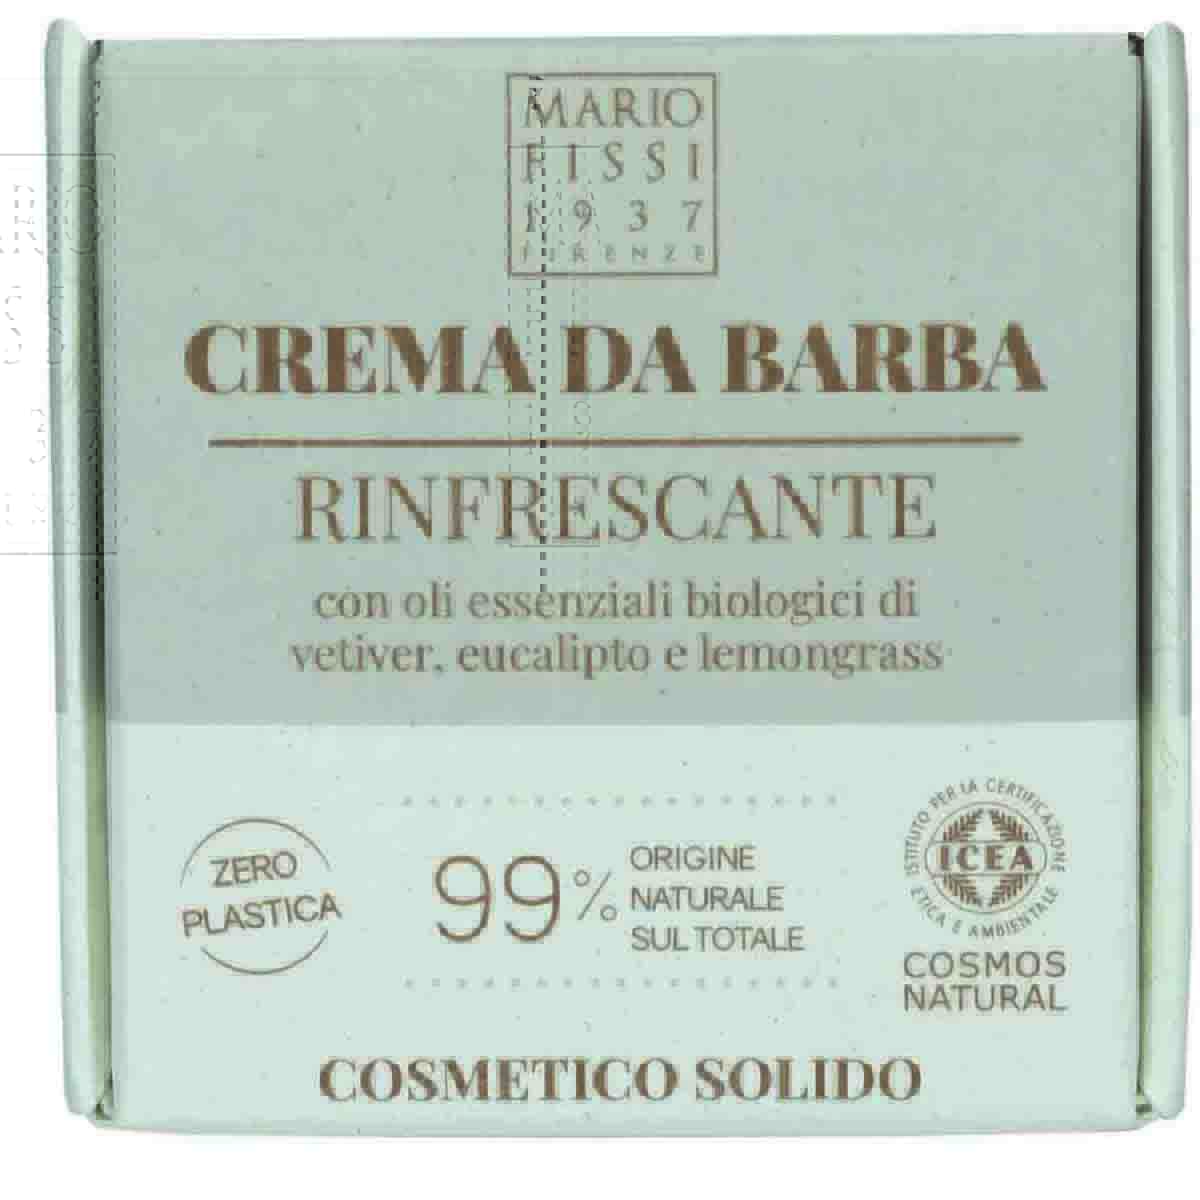 Крем-мыло для бритья твердое Mario Fissi 1937 Square Оcвежающее cc крем для лица с эффектом лифтинга 50 мл